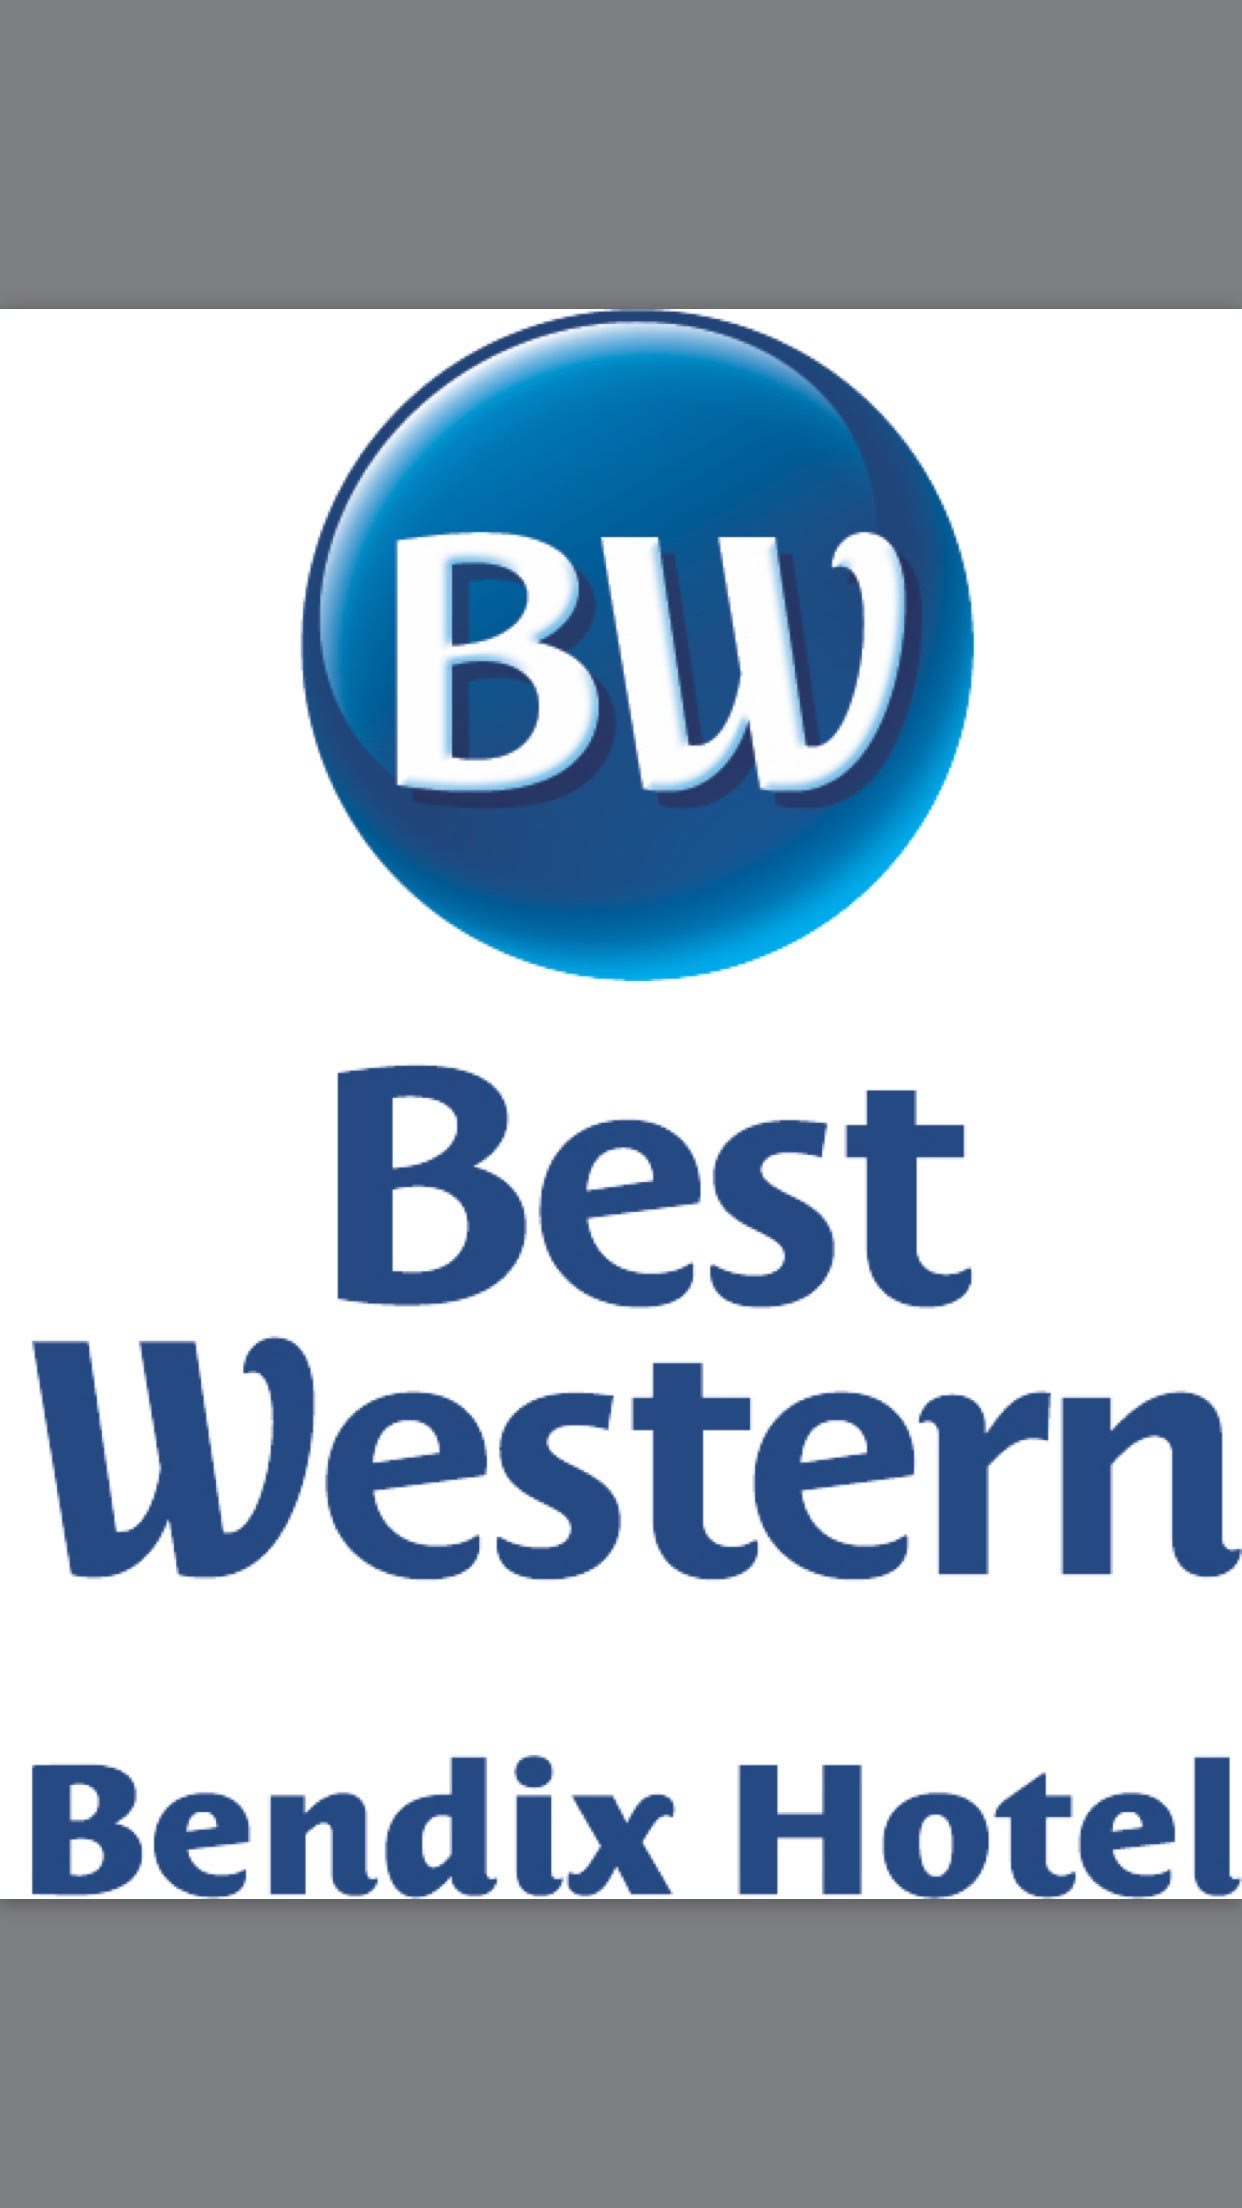 Best Western Logos